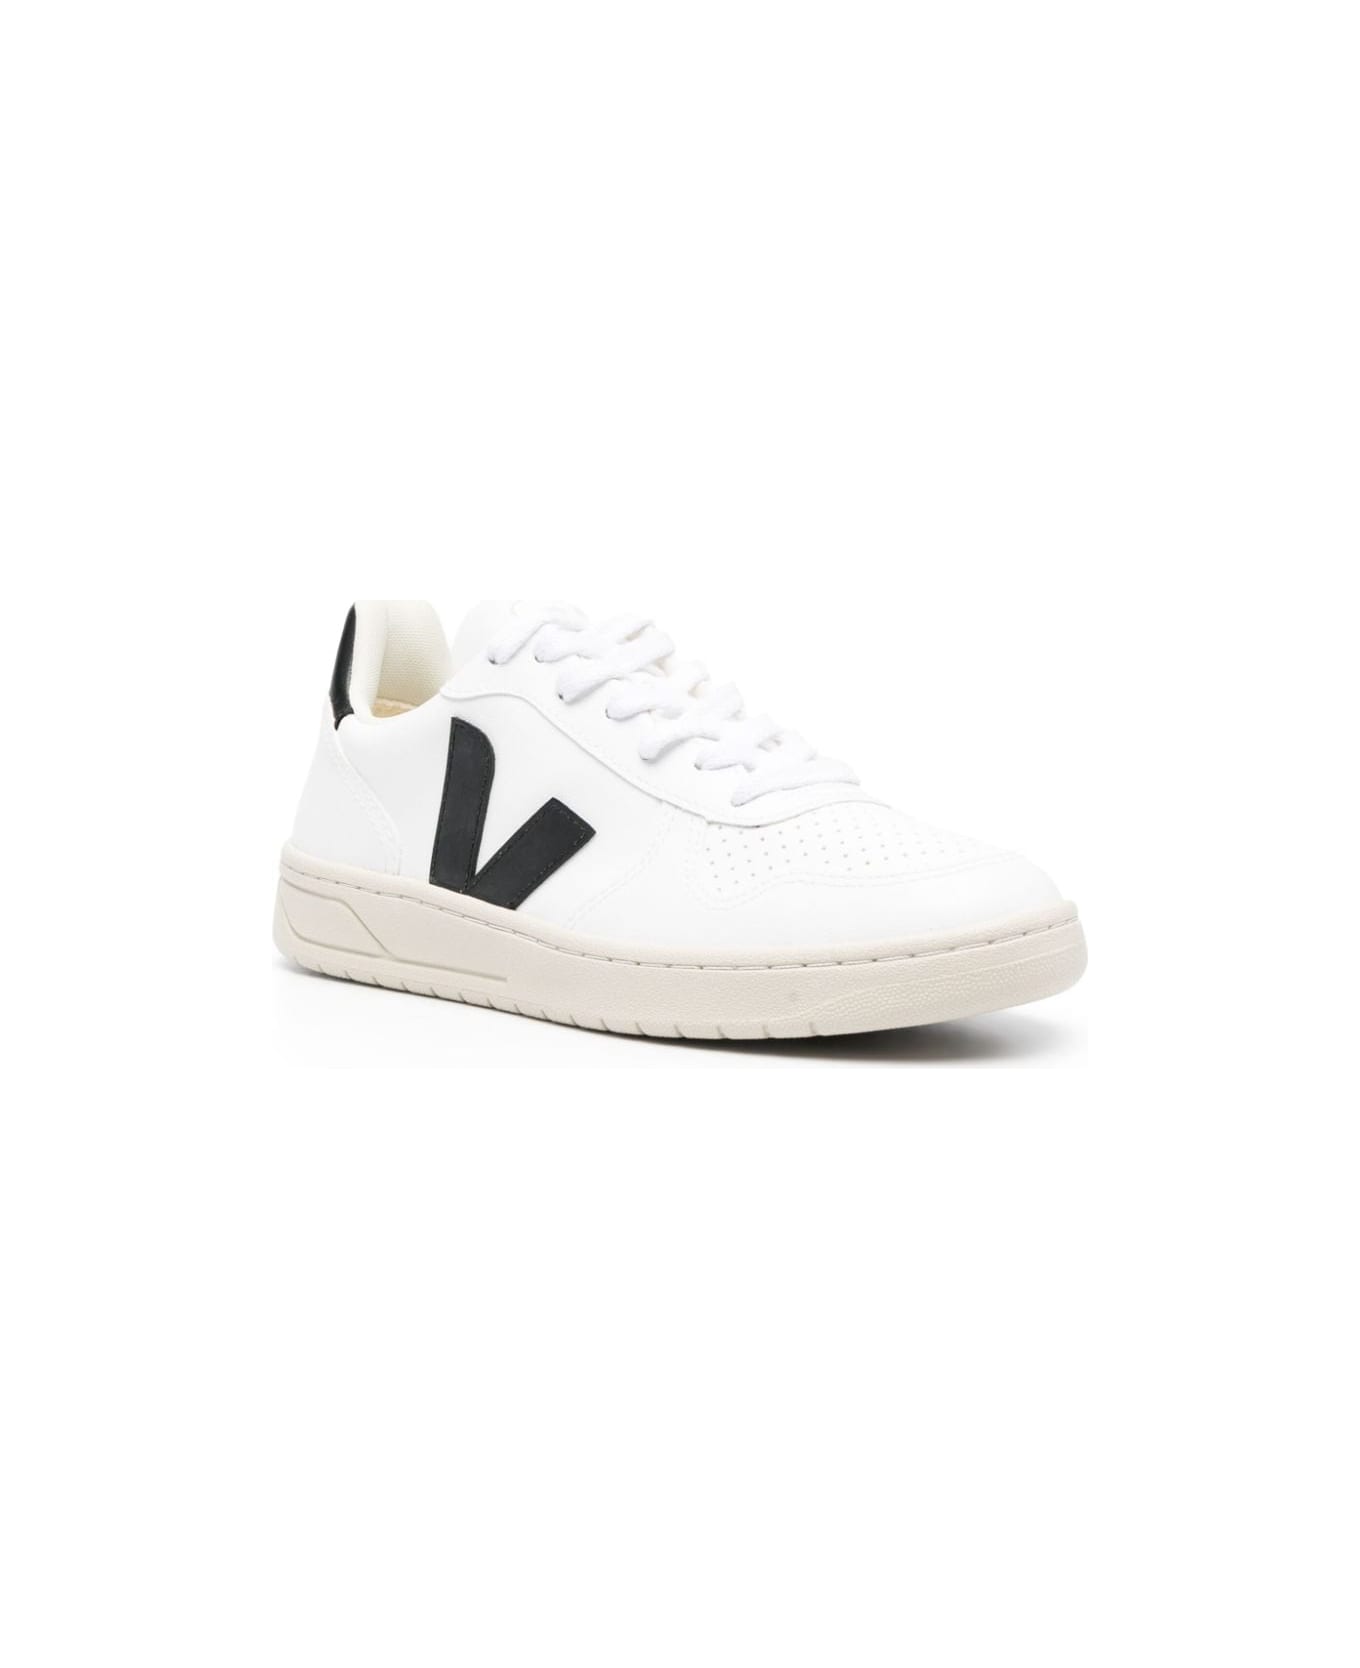 Veja V-10 Sneakers - White Black